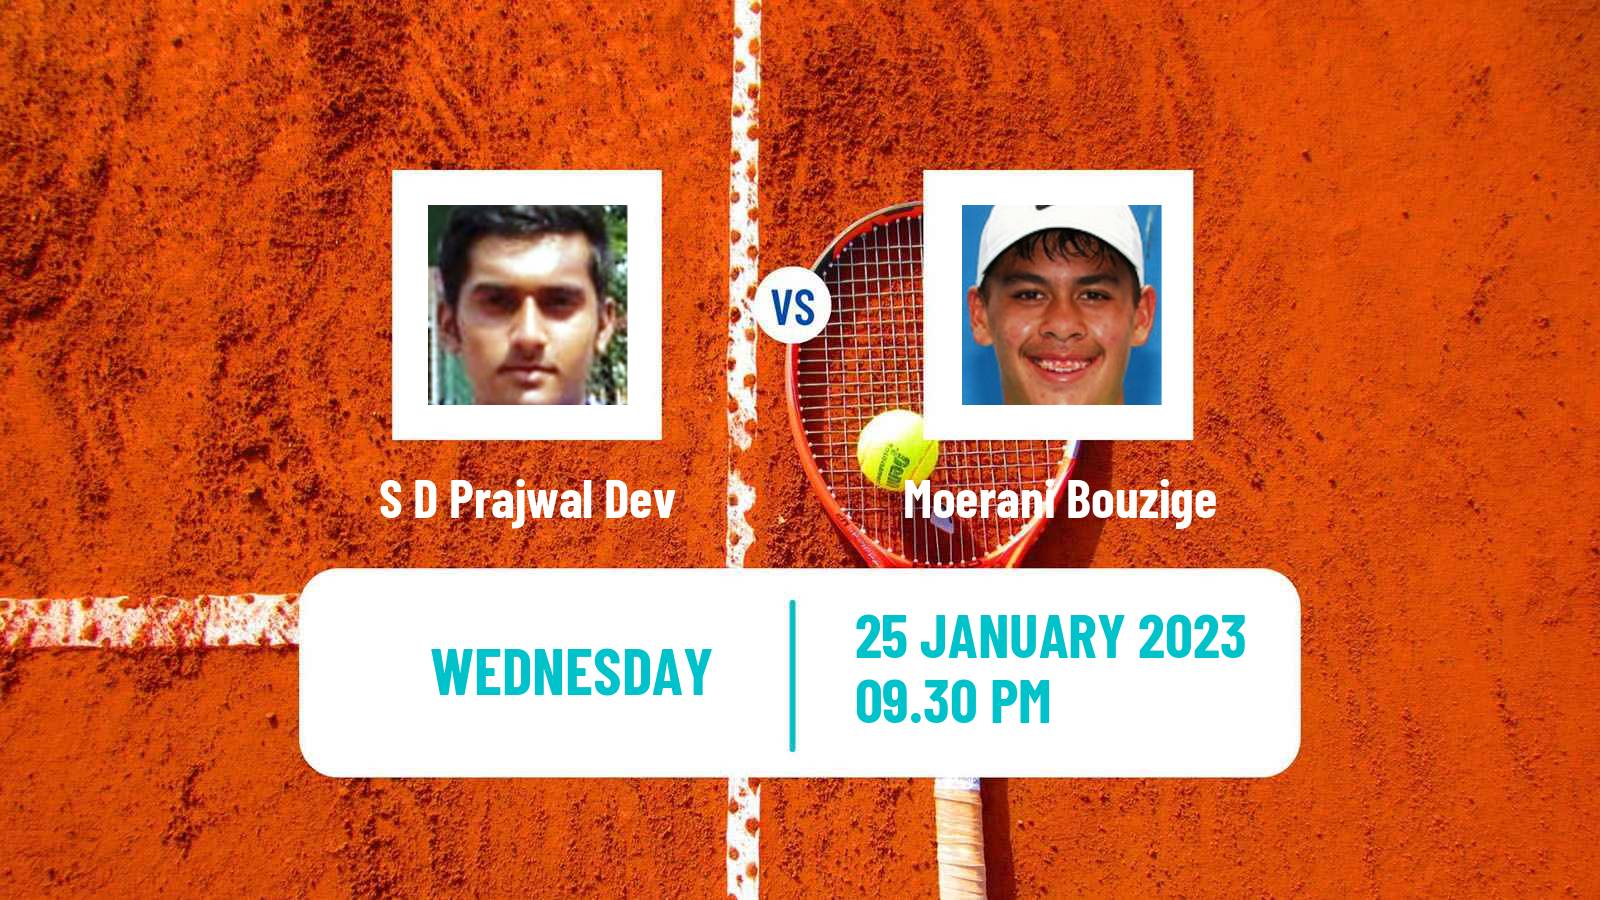 Tennis ITF Tournaments S D Prajwal Dev - Moerani Bouzige